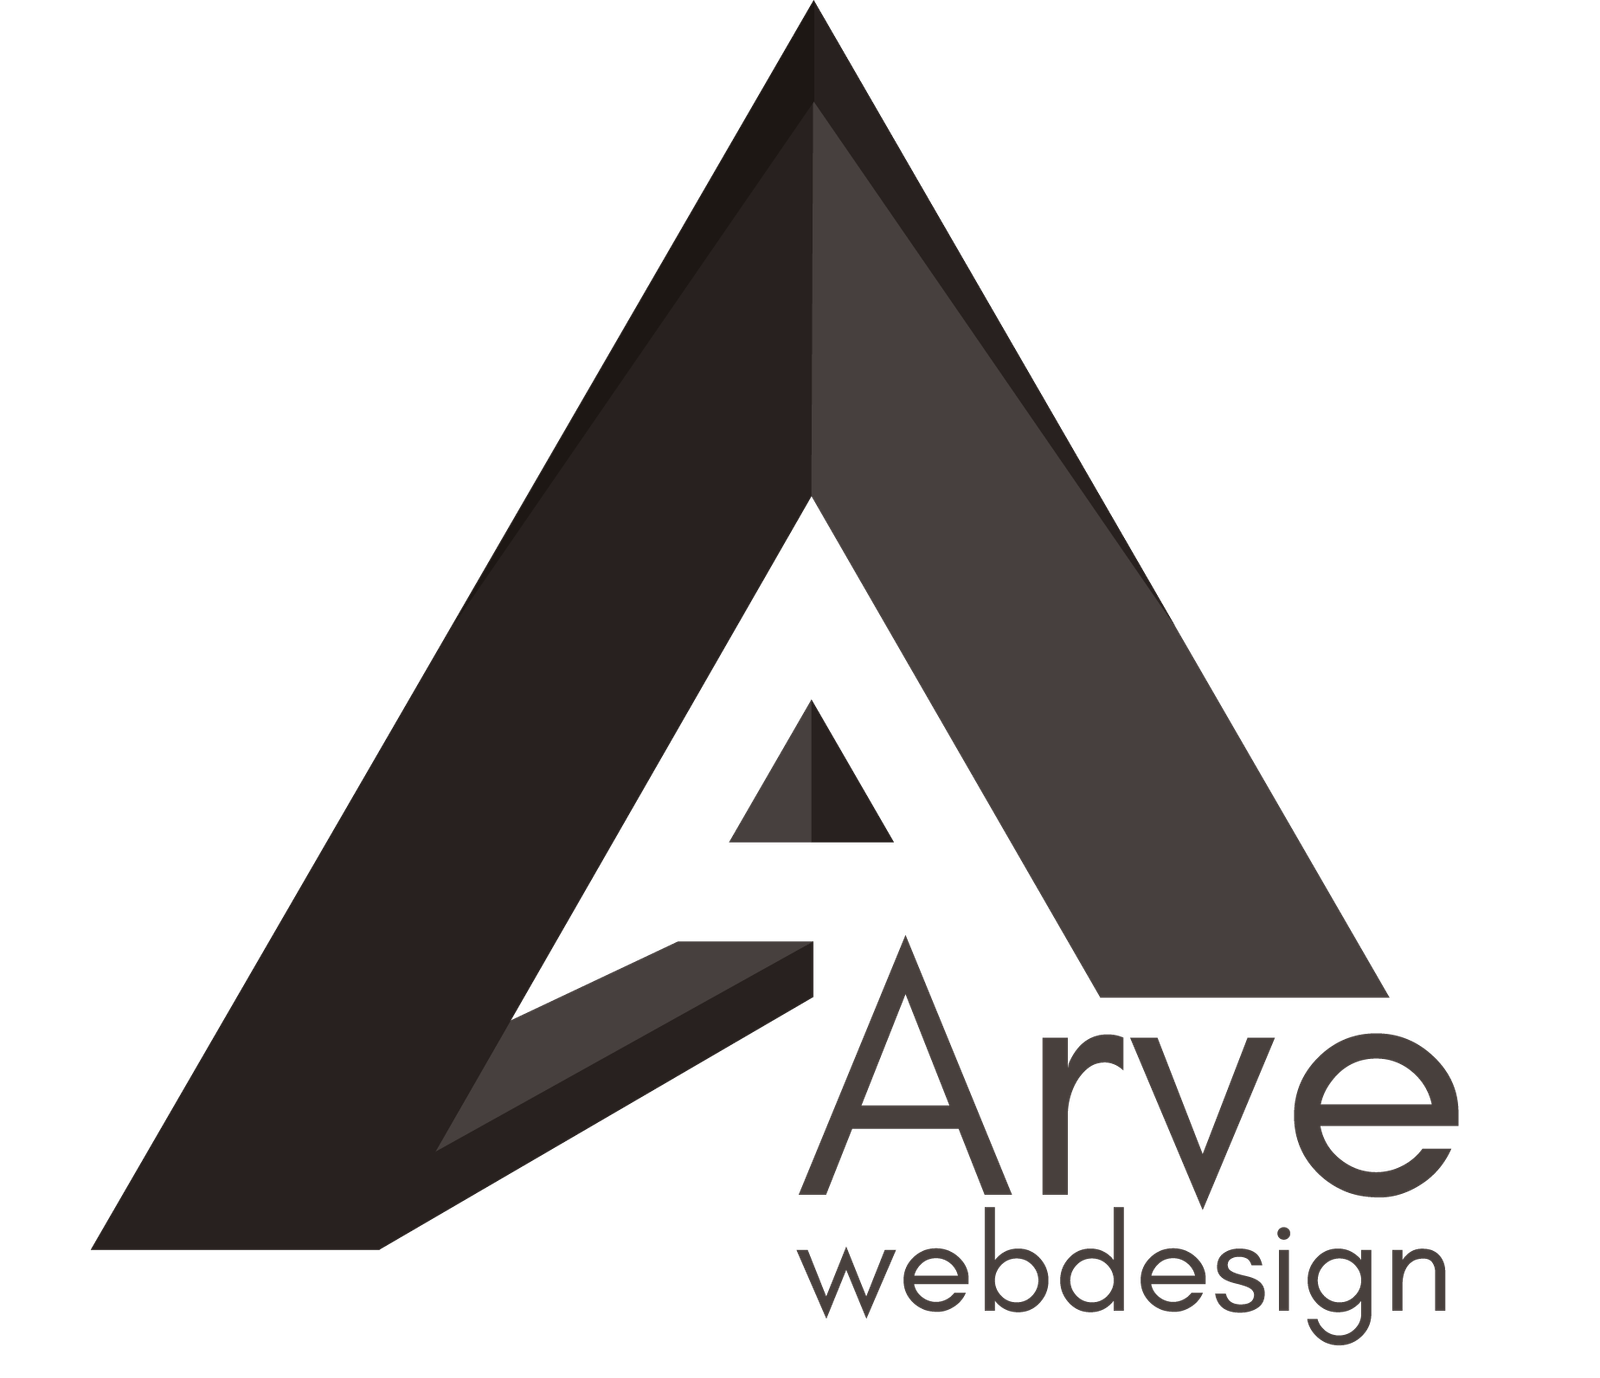 Arve Webdesign